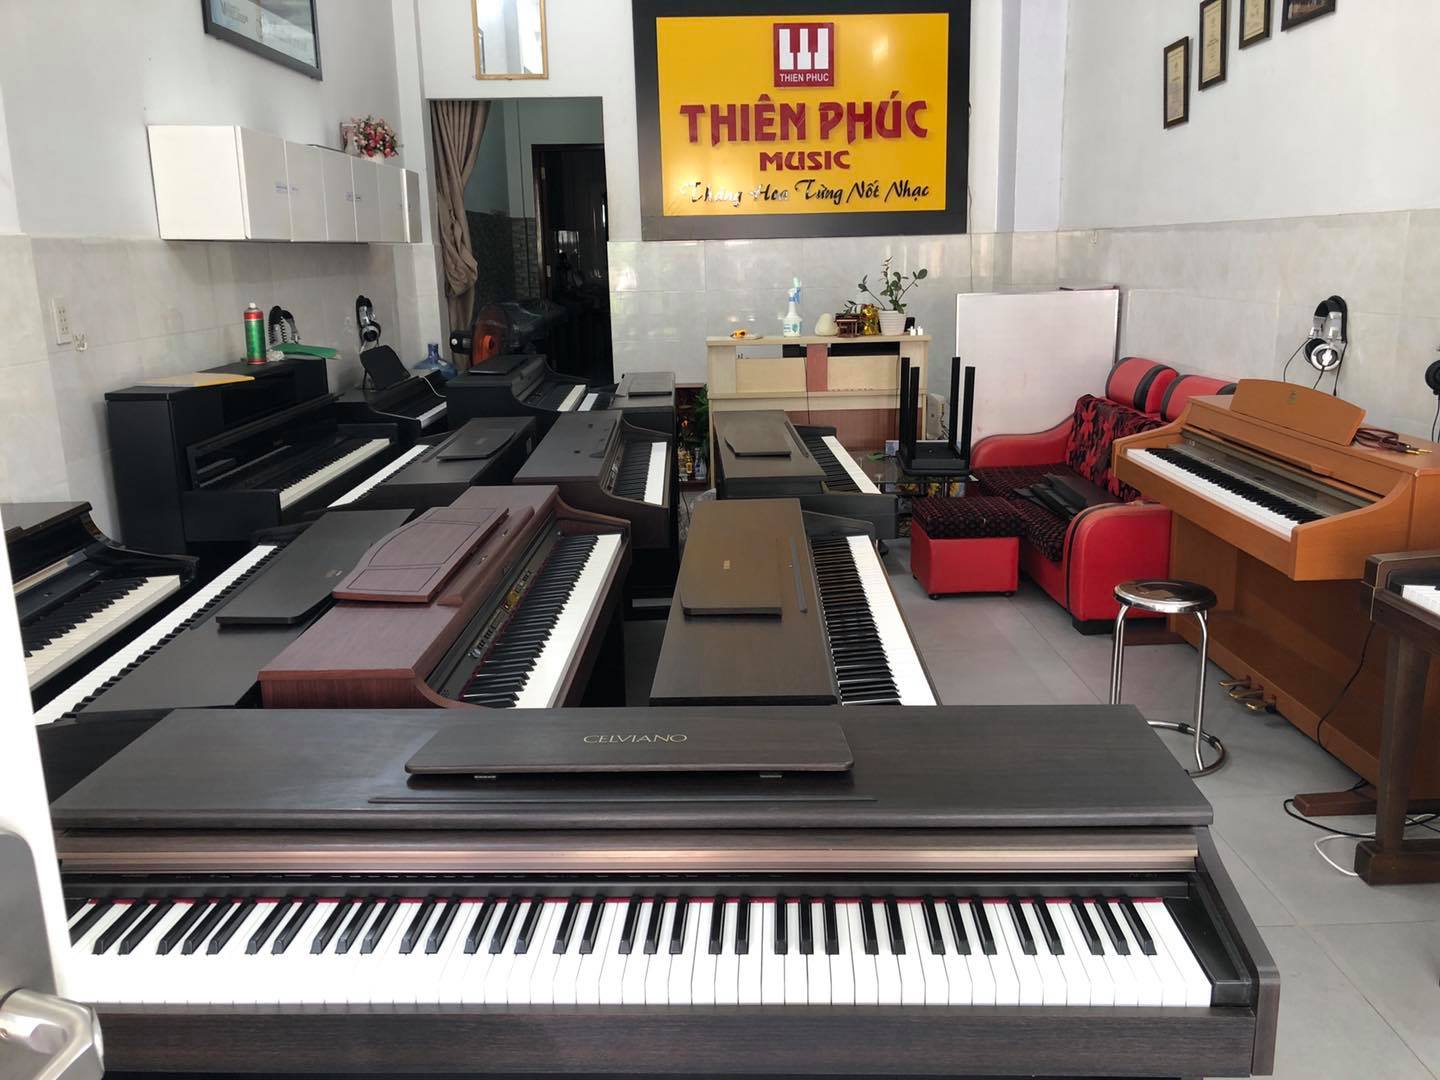 Nhạc cụ Thiên Phúc - Cửa hàng Đàn Piano Điện, Piano Cơ